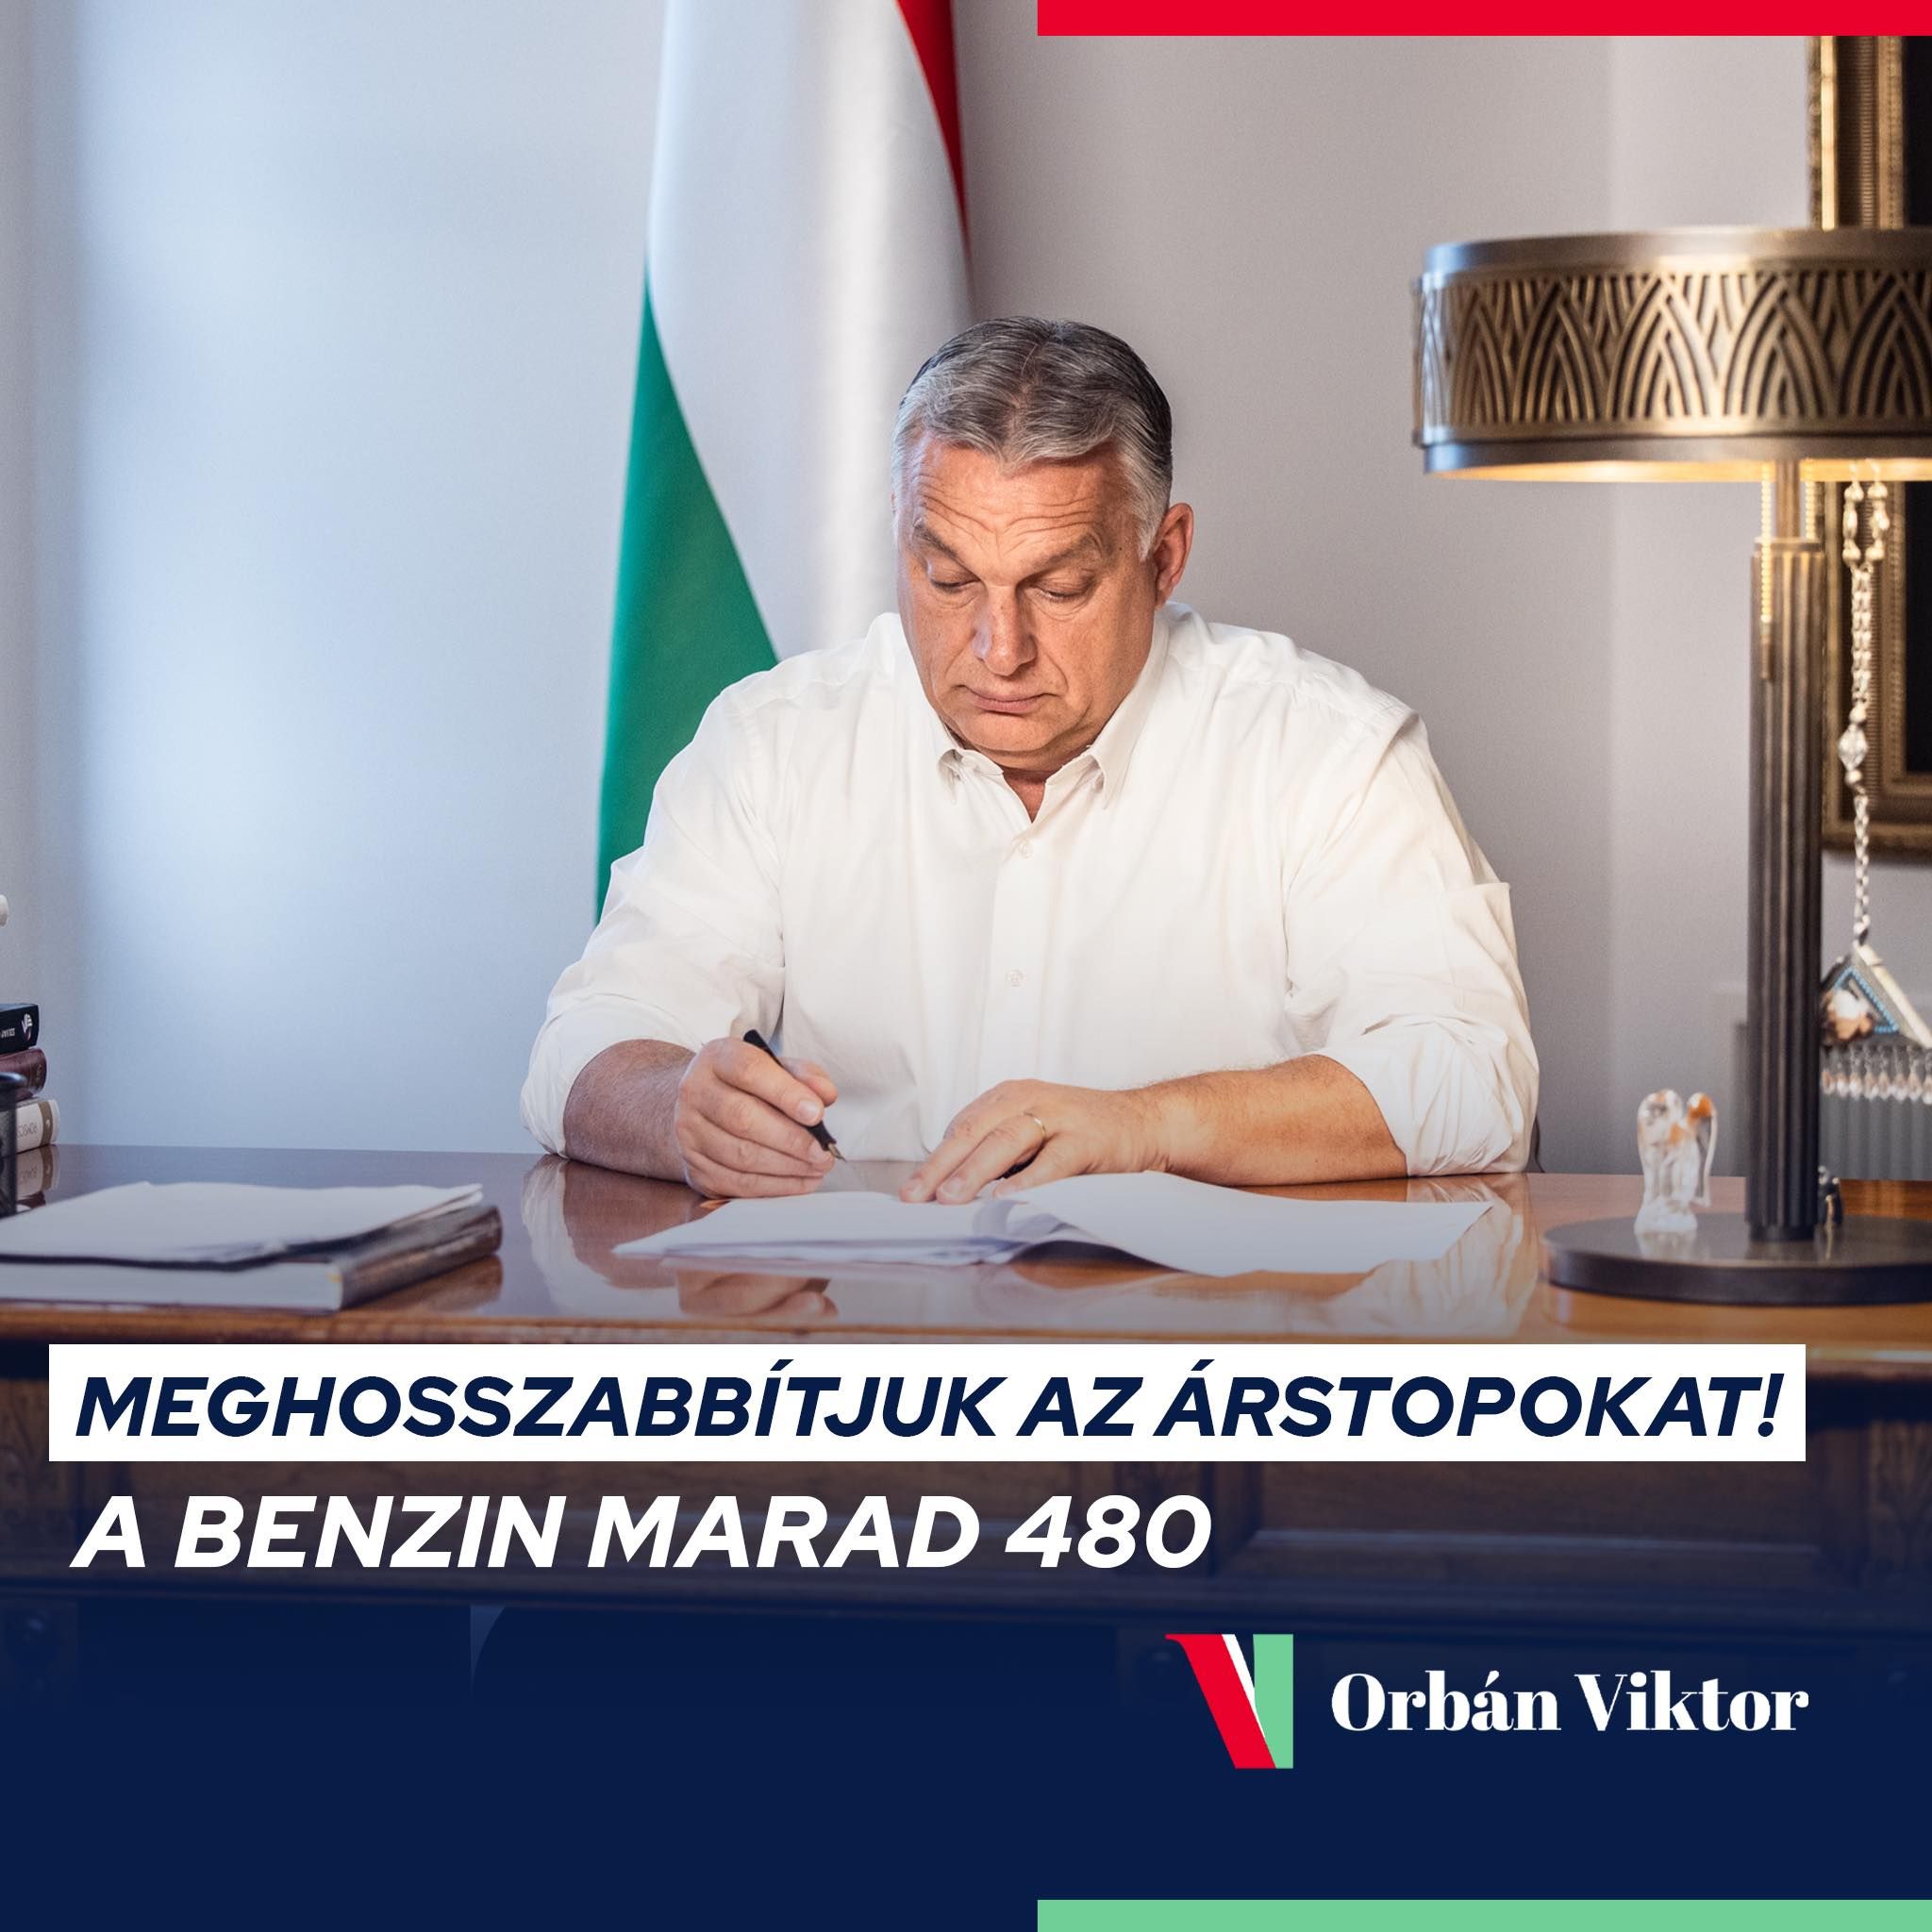 Orbán bejelentette: eddig a dátumig biztosan maradnak az árstopok